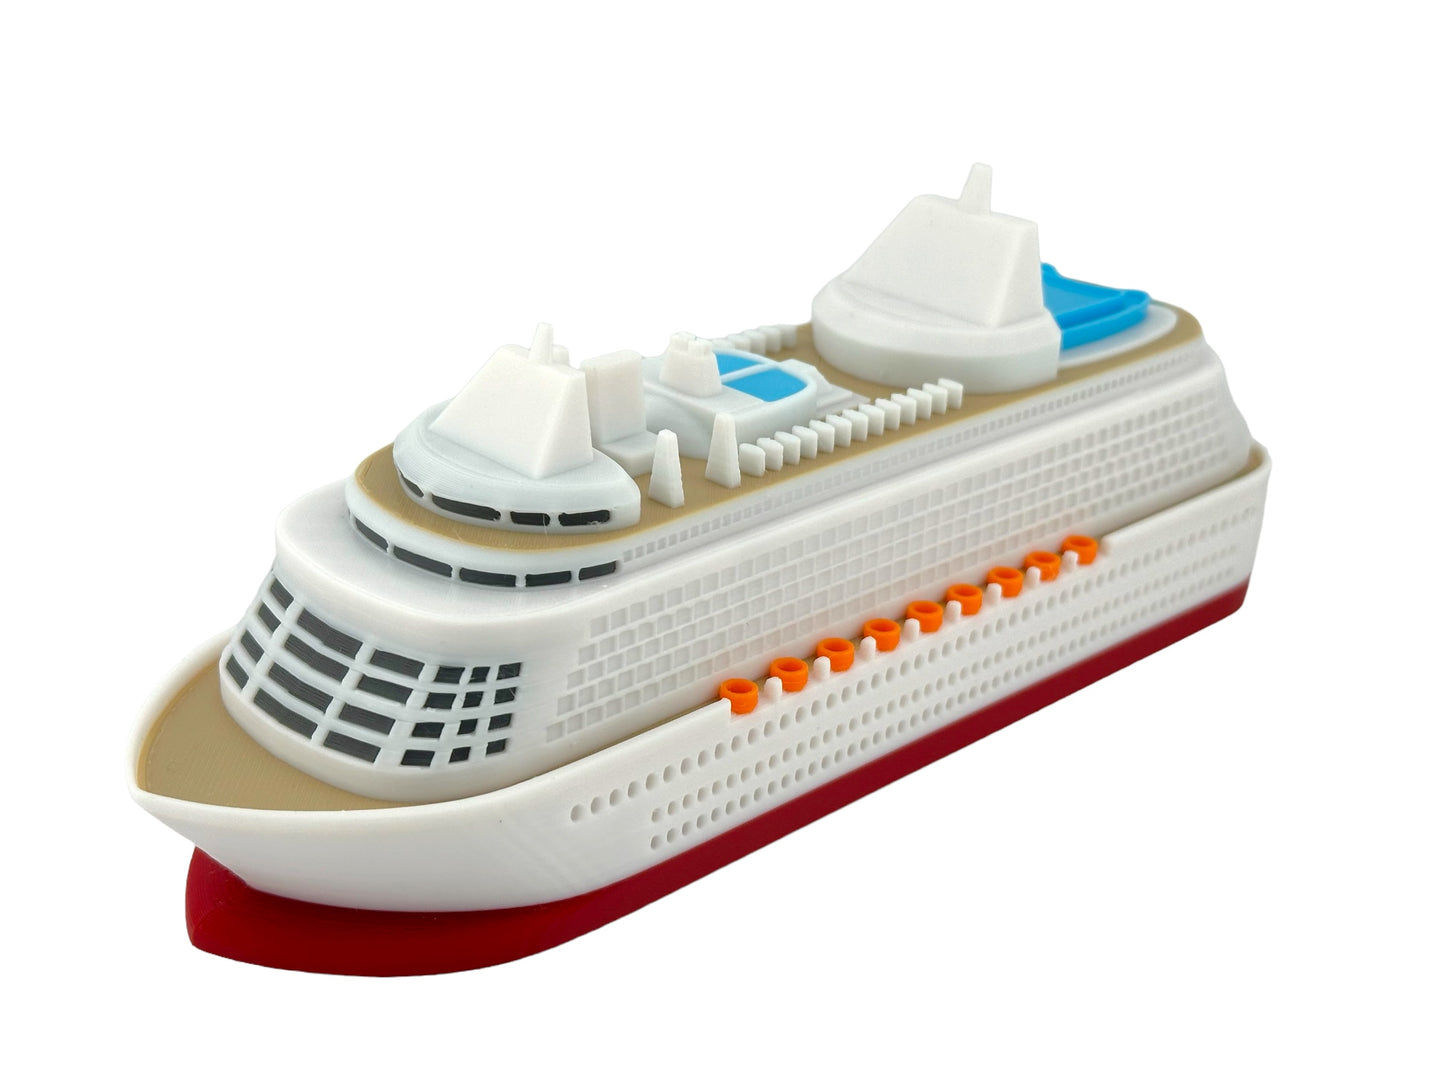 Modern Cruise ship Floating bath/pool toy